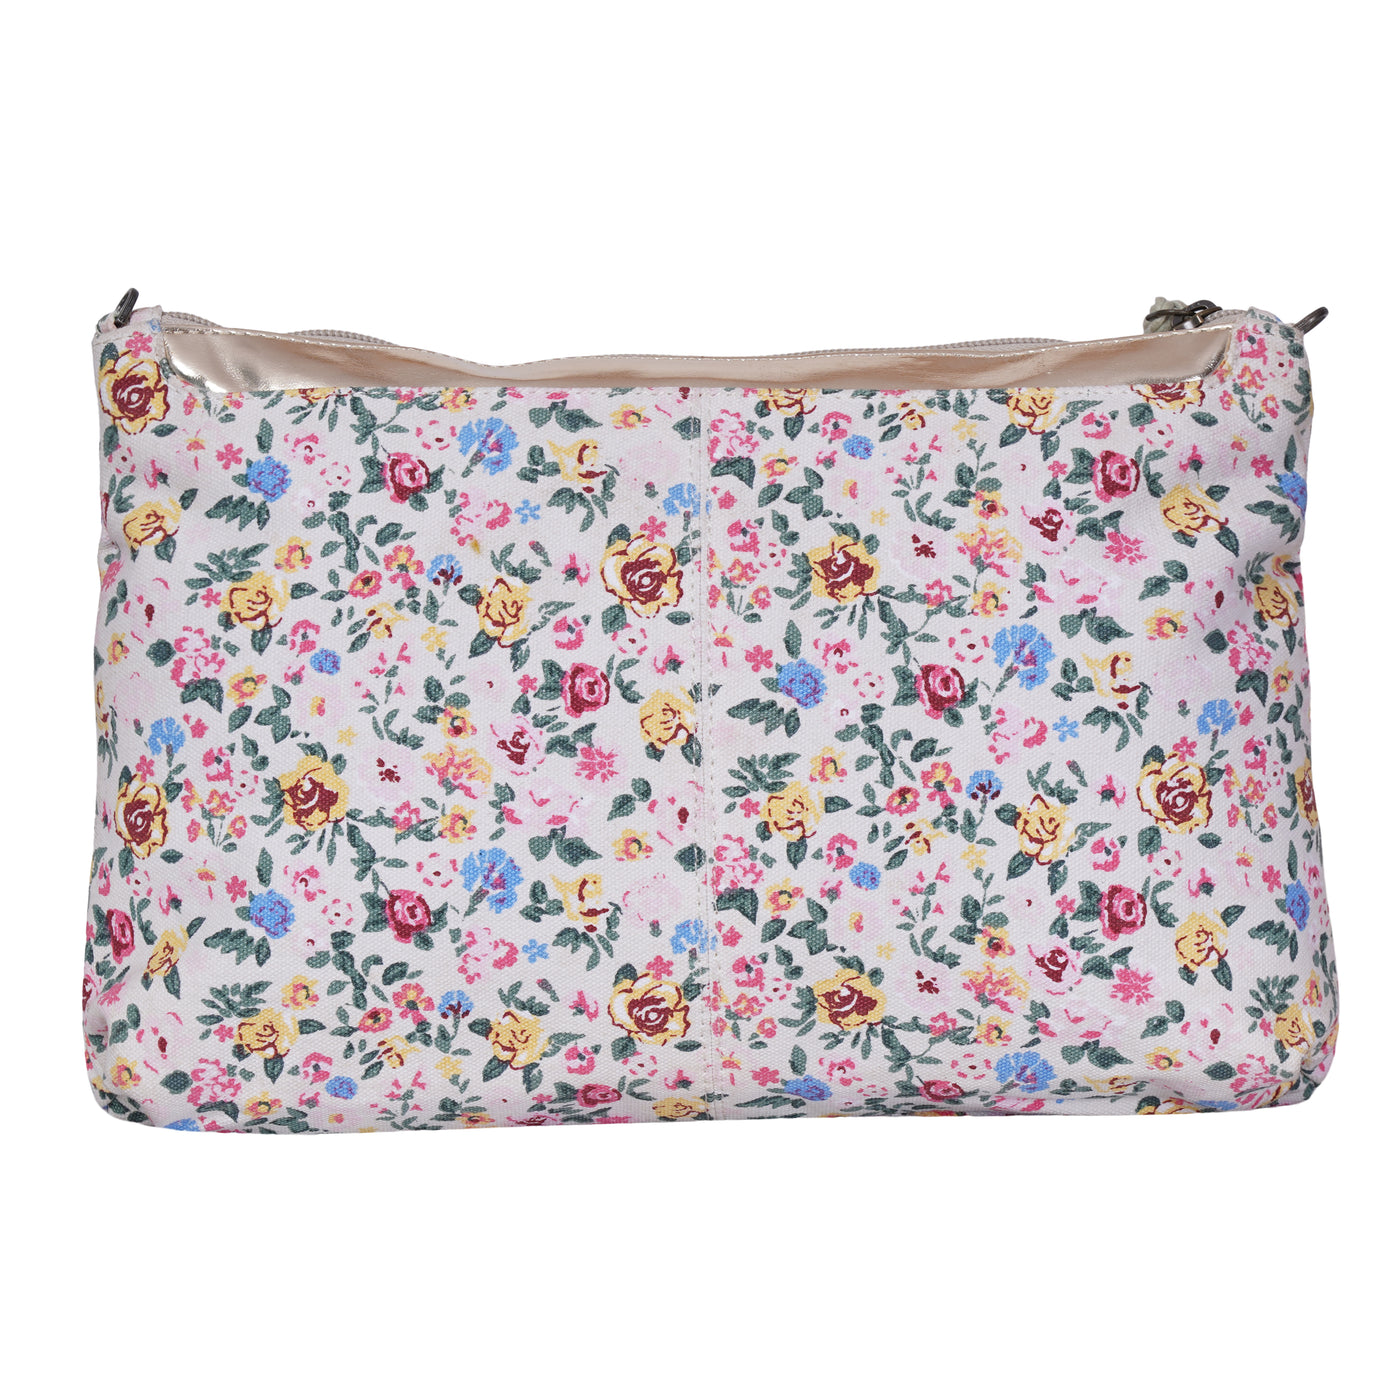 Flower clutch bag